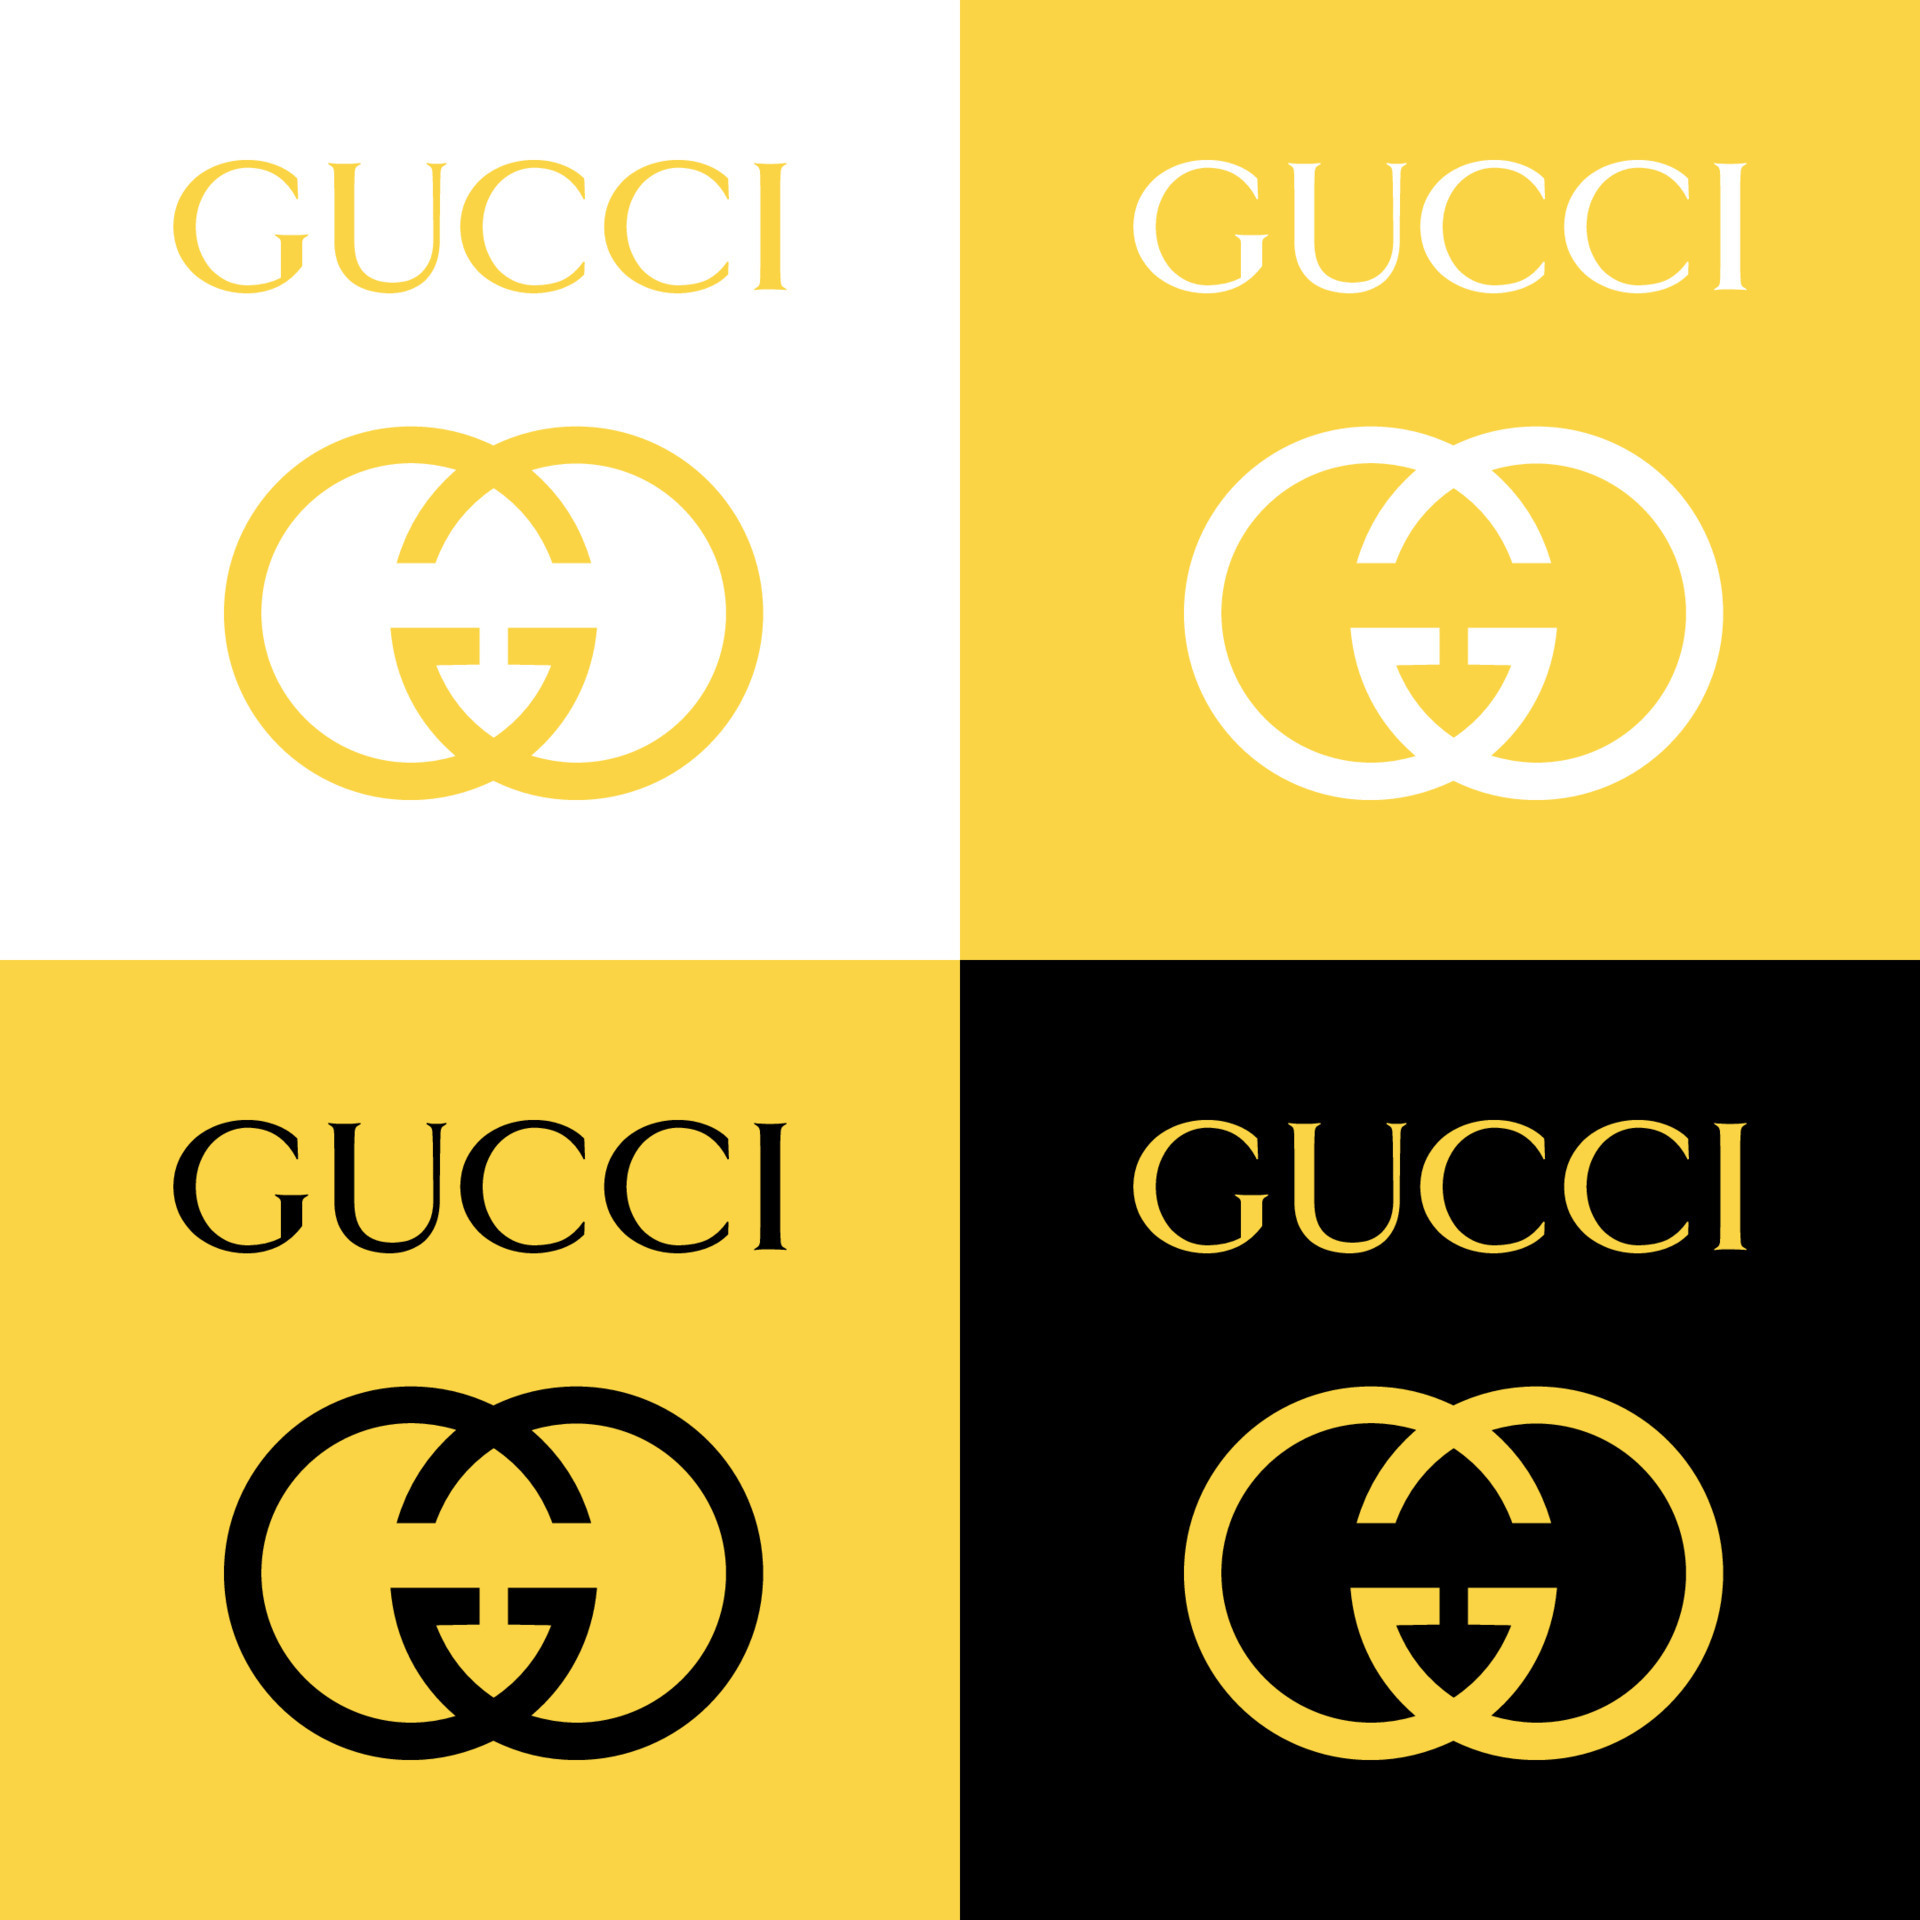 Logo GUCCI là biểu tượng của sự sang trọng, đẳng cấp và phong cách. Những hình ảnh liên quan đến logo này chắc chắn sẽ thu hút sự chú ý của bạn, và giúp bạn khám phá và chiêm ngưỡng những thiết kế cực kỳ ấn tượng từ thương hiệu nổi tiếng này.